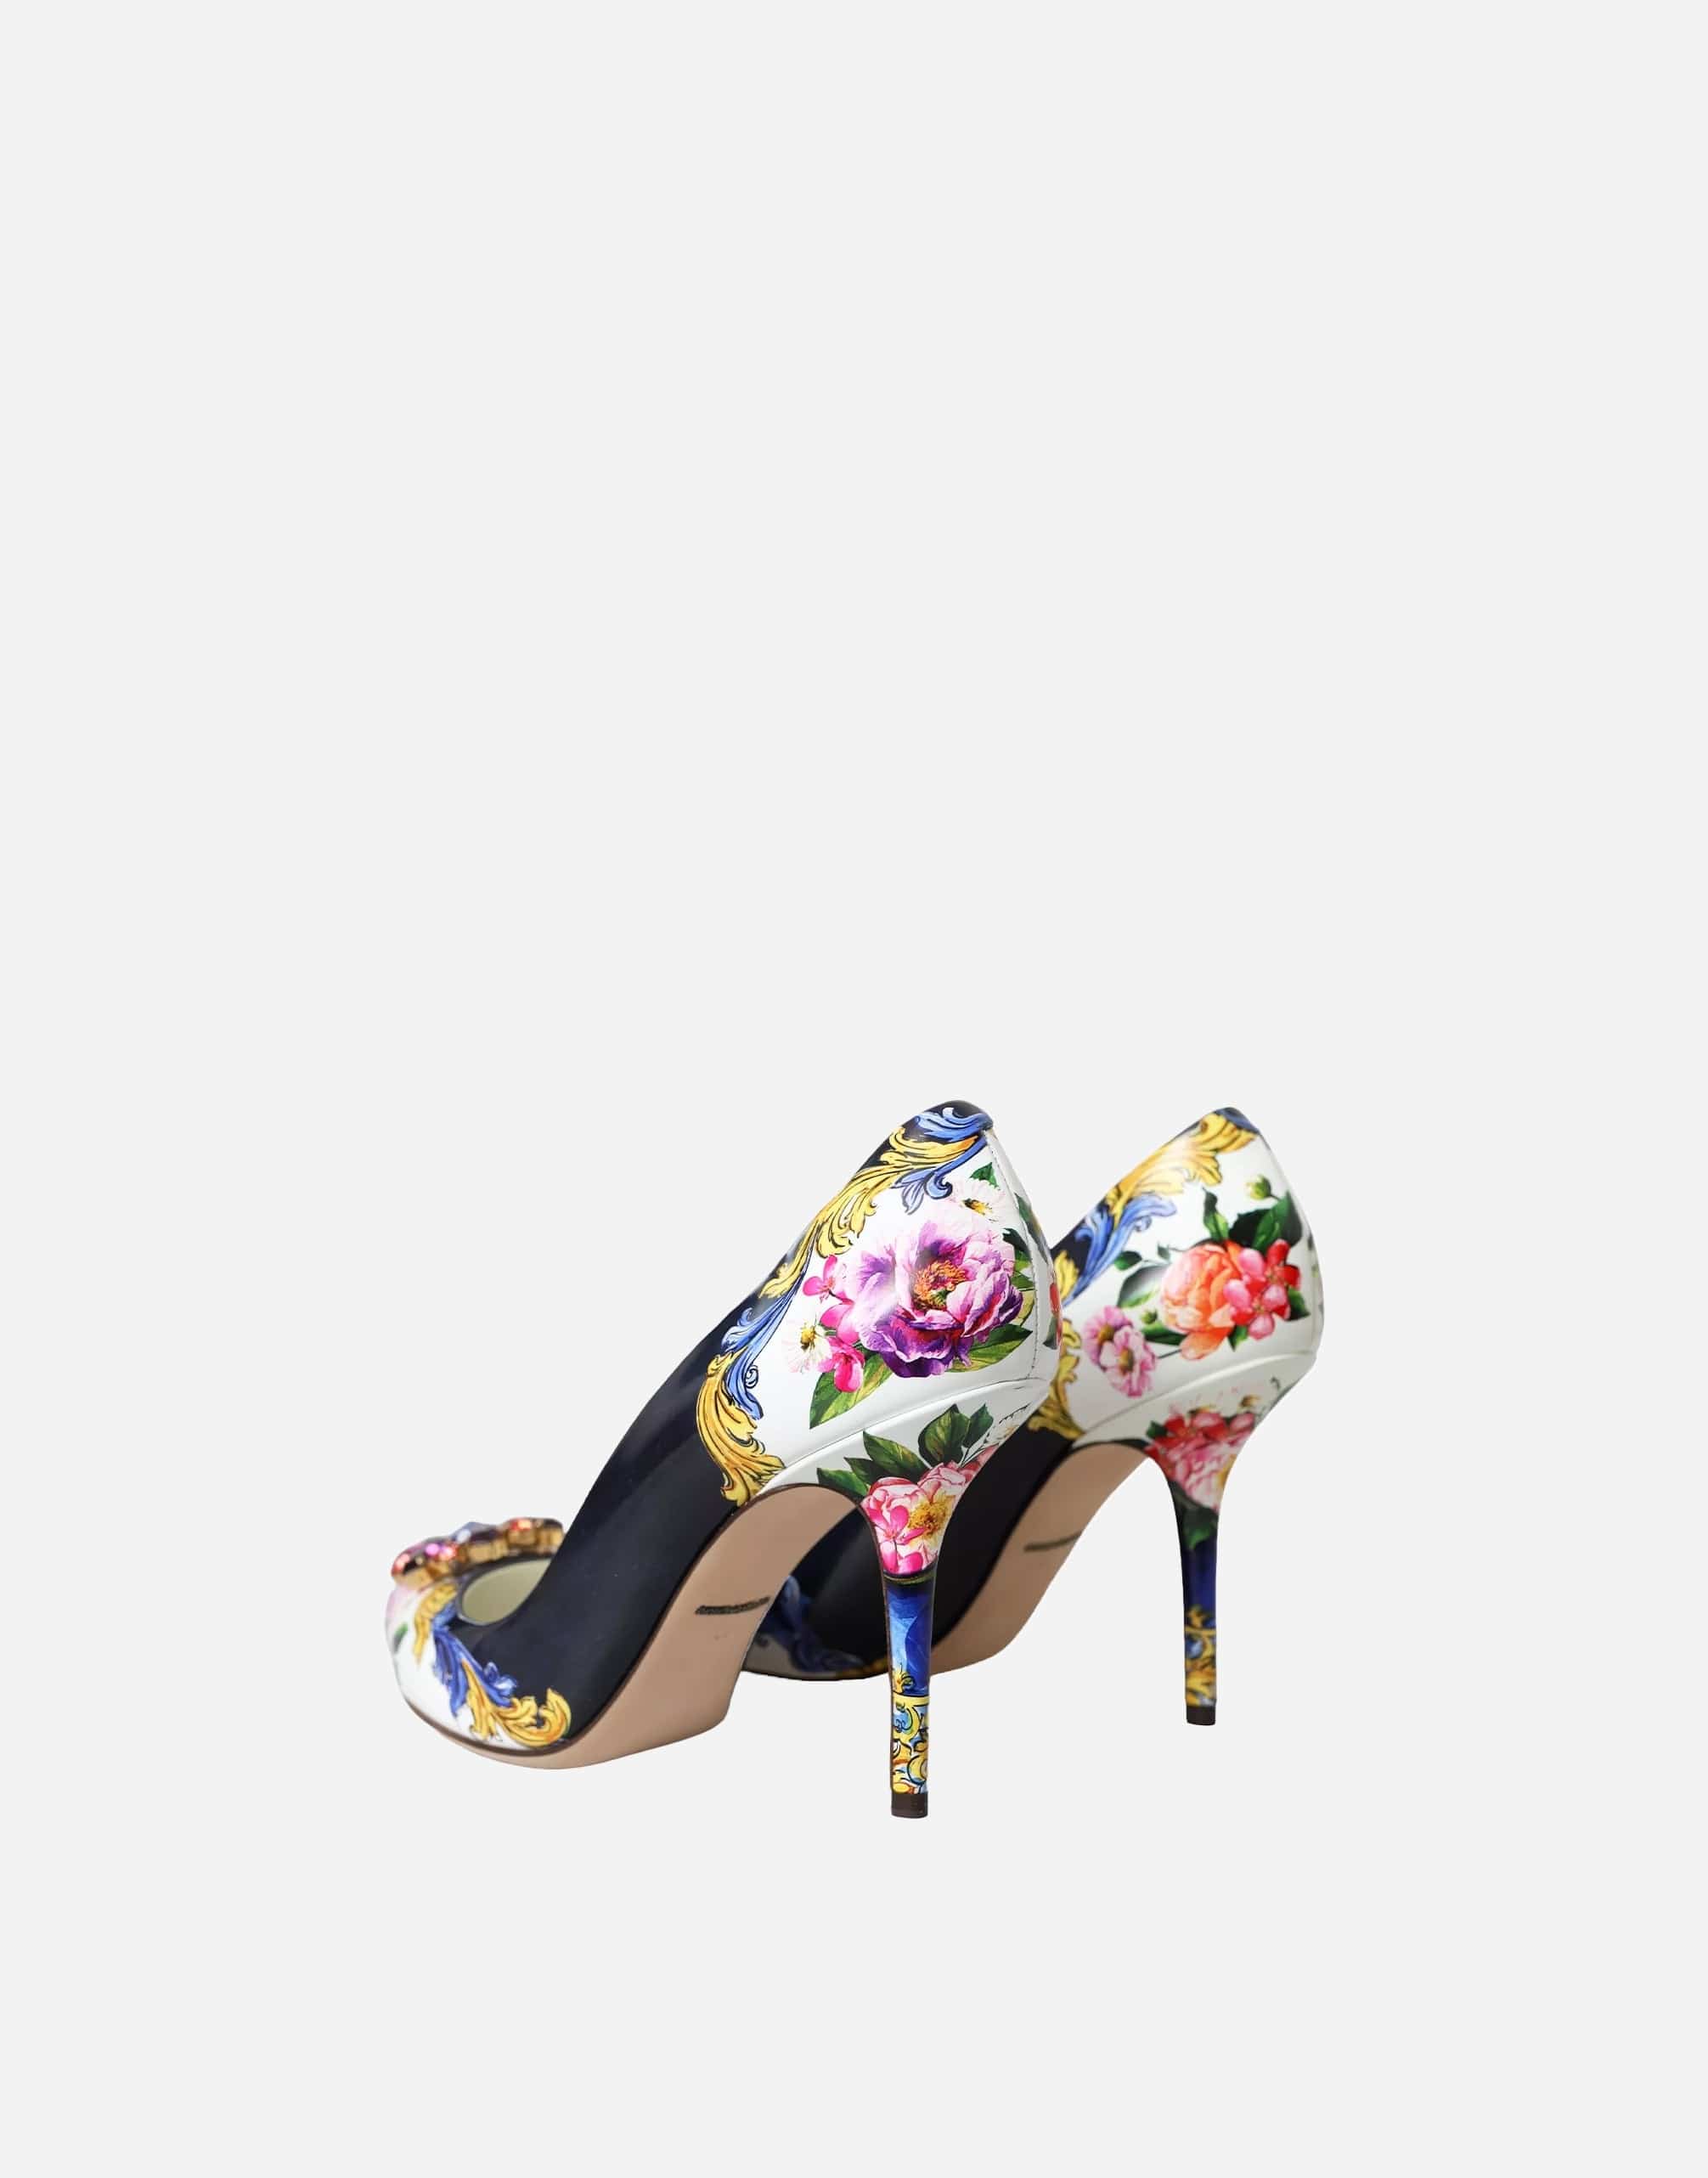 Dolce & Gabbana Multicolor Floral Print Pumps